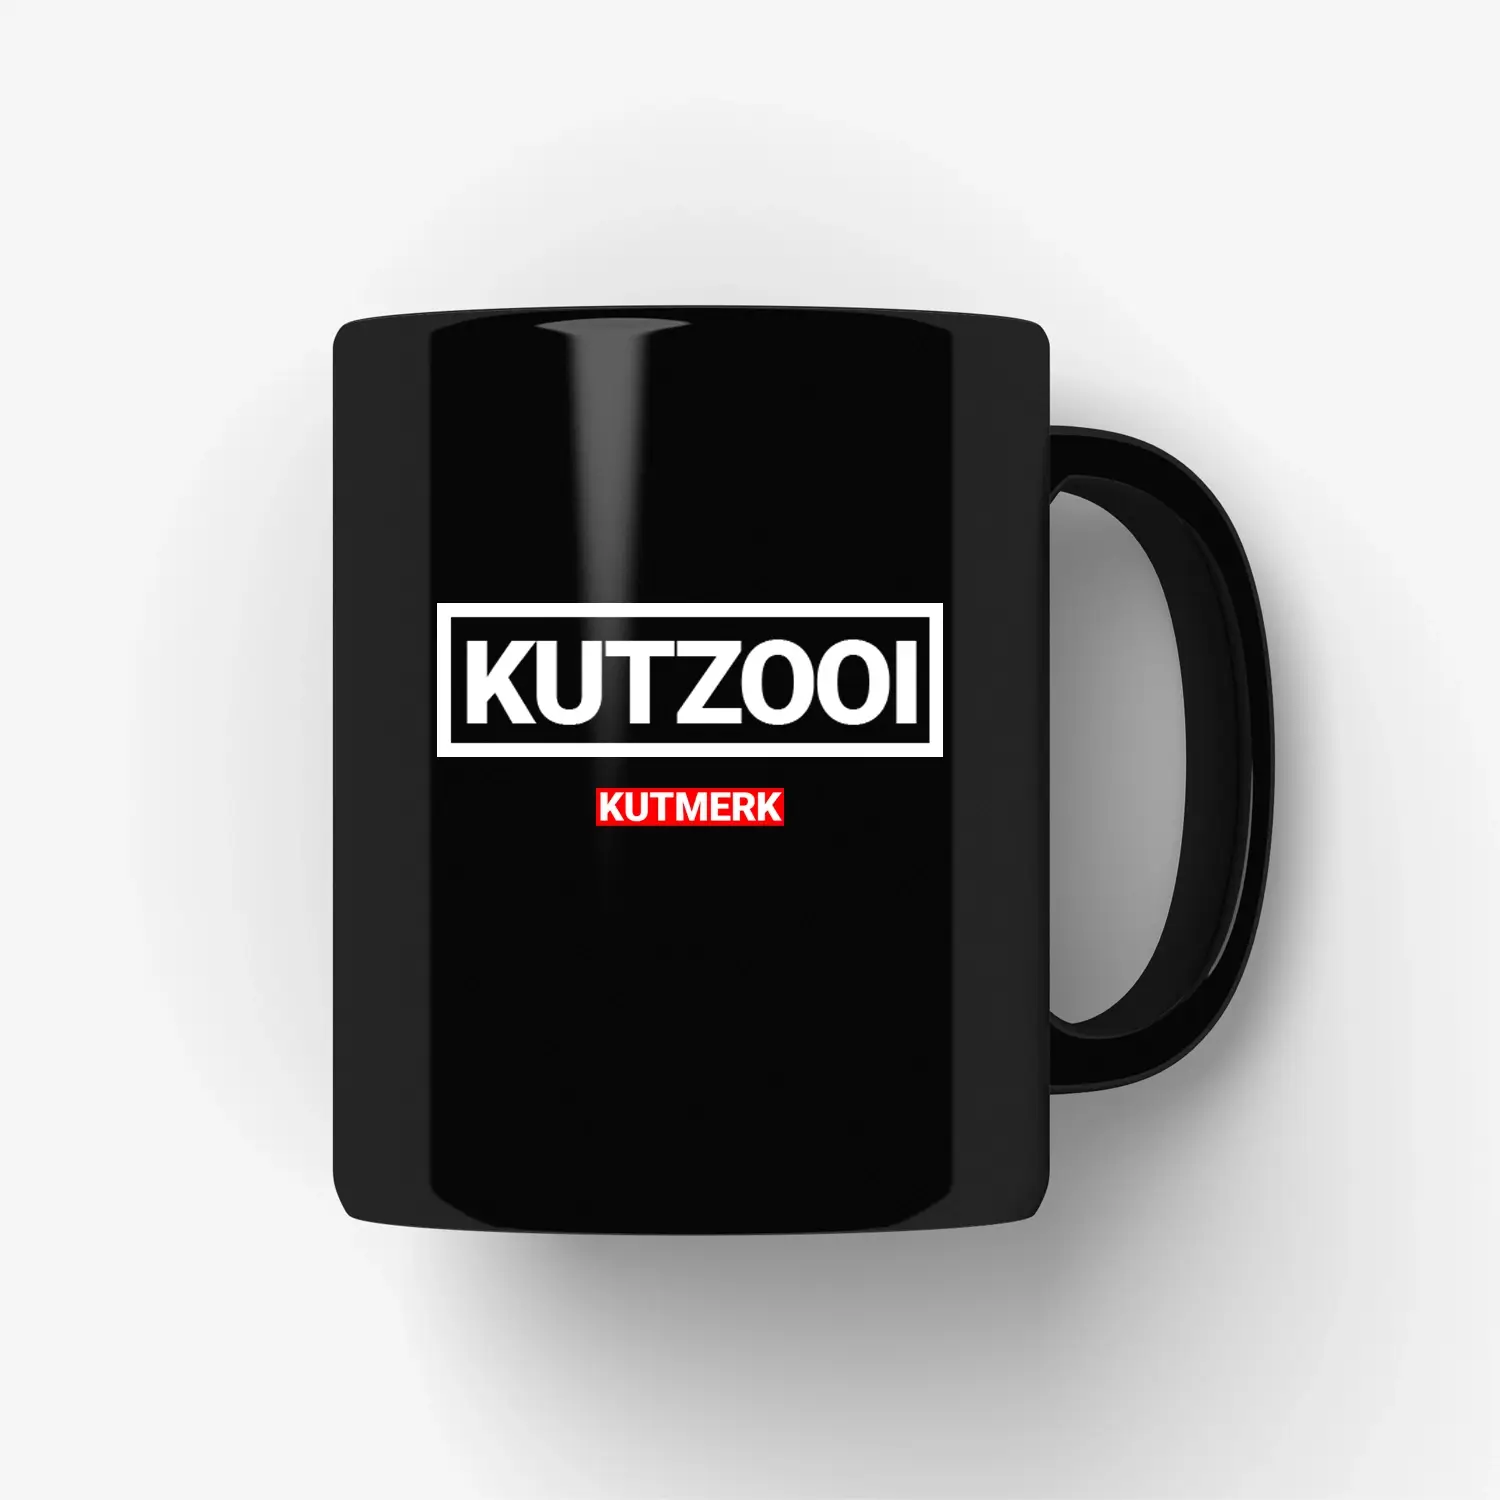 Kutzooi